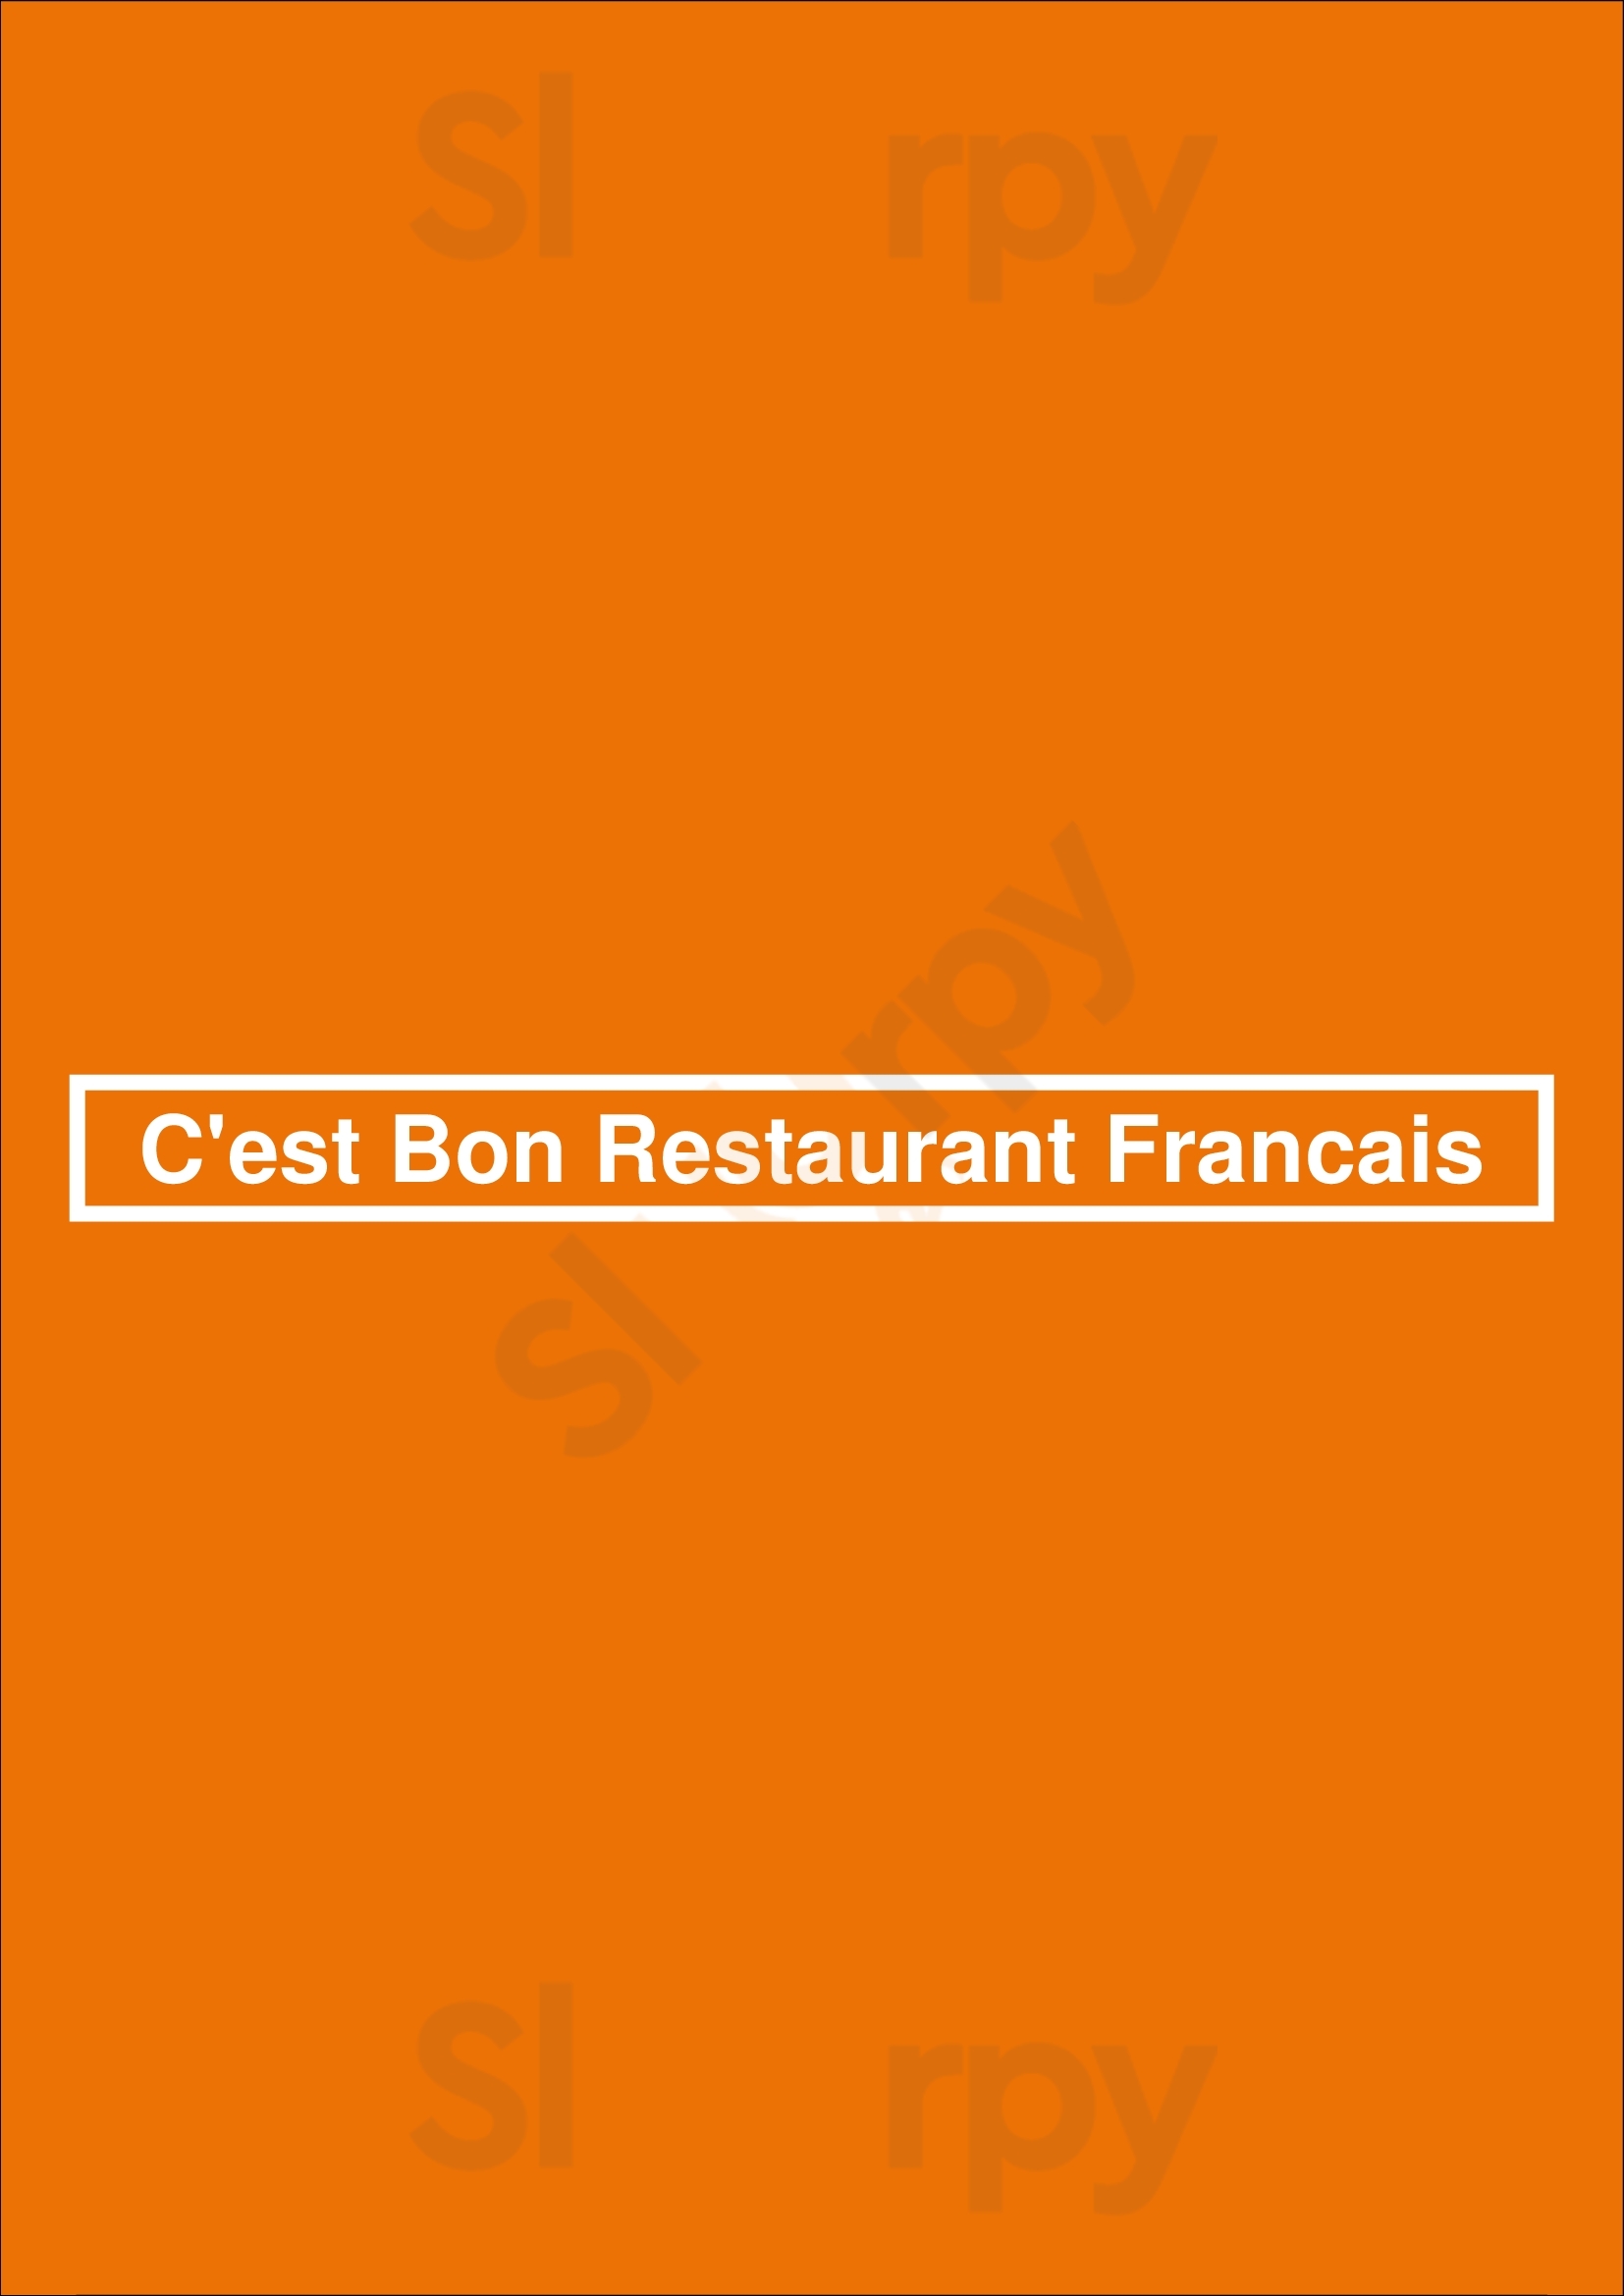 C'est Bon Restaurant Francais Cairns Menu - 1